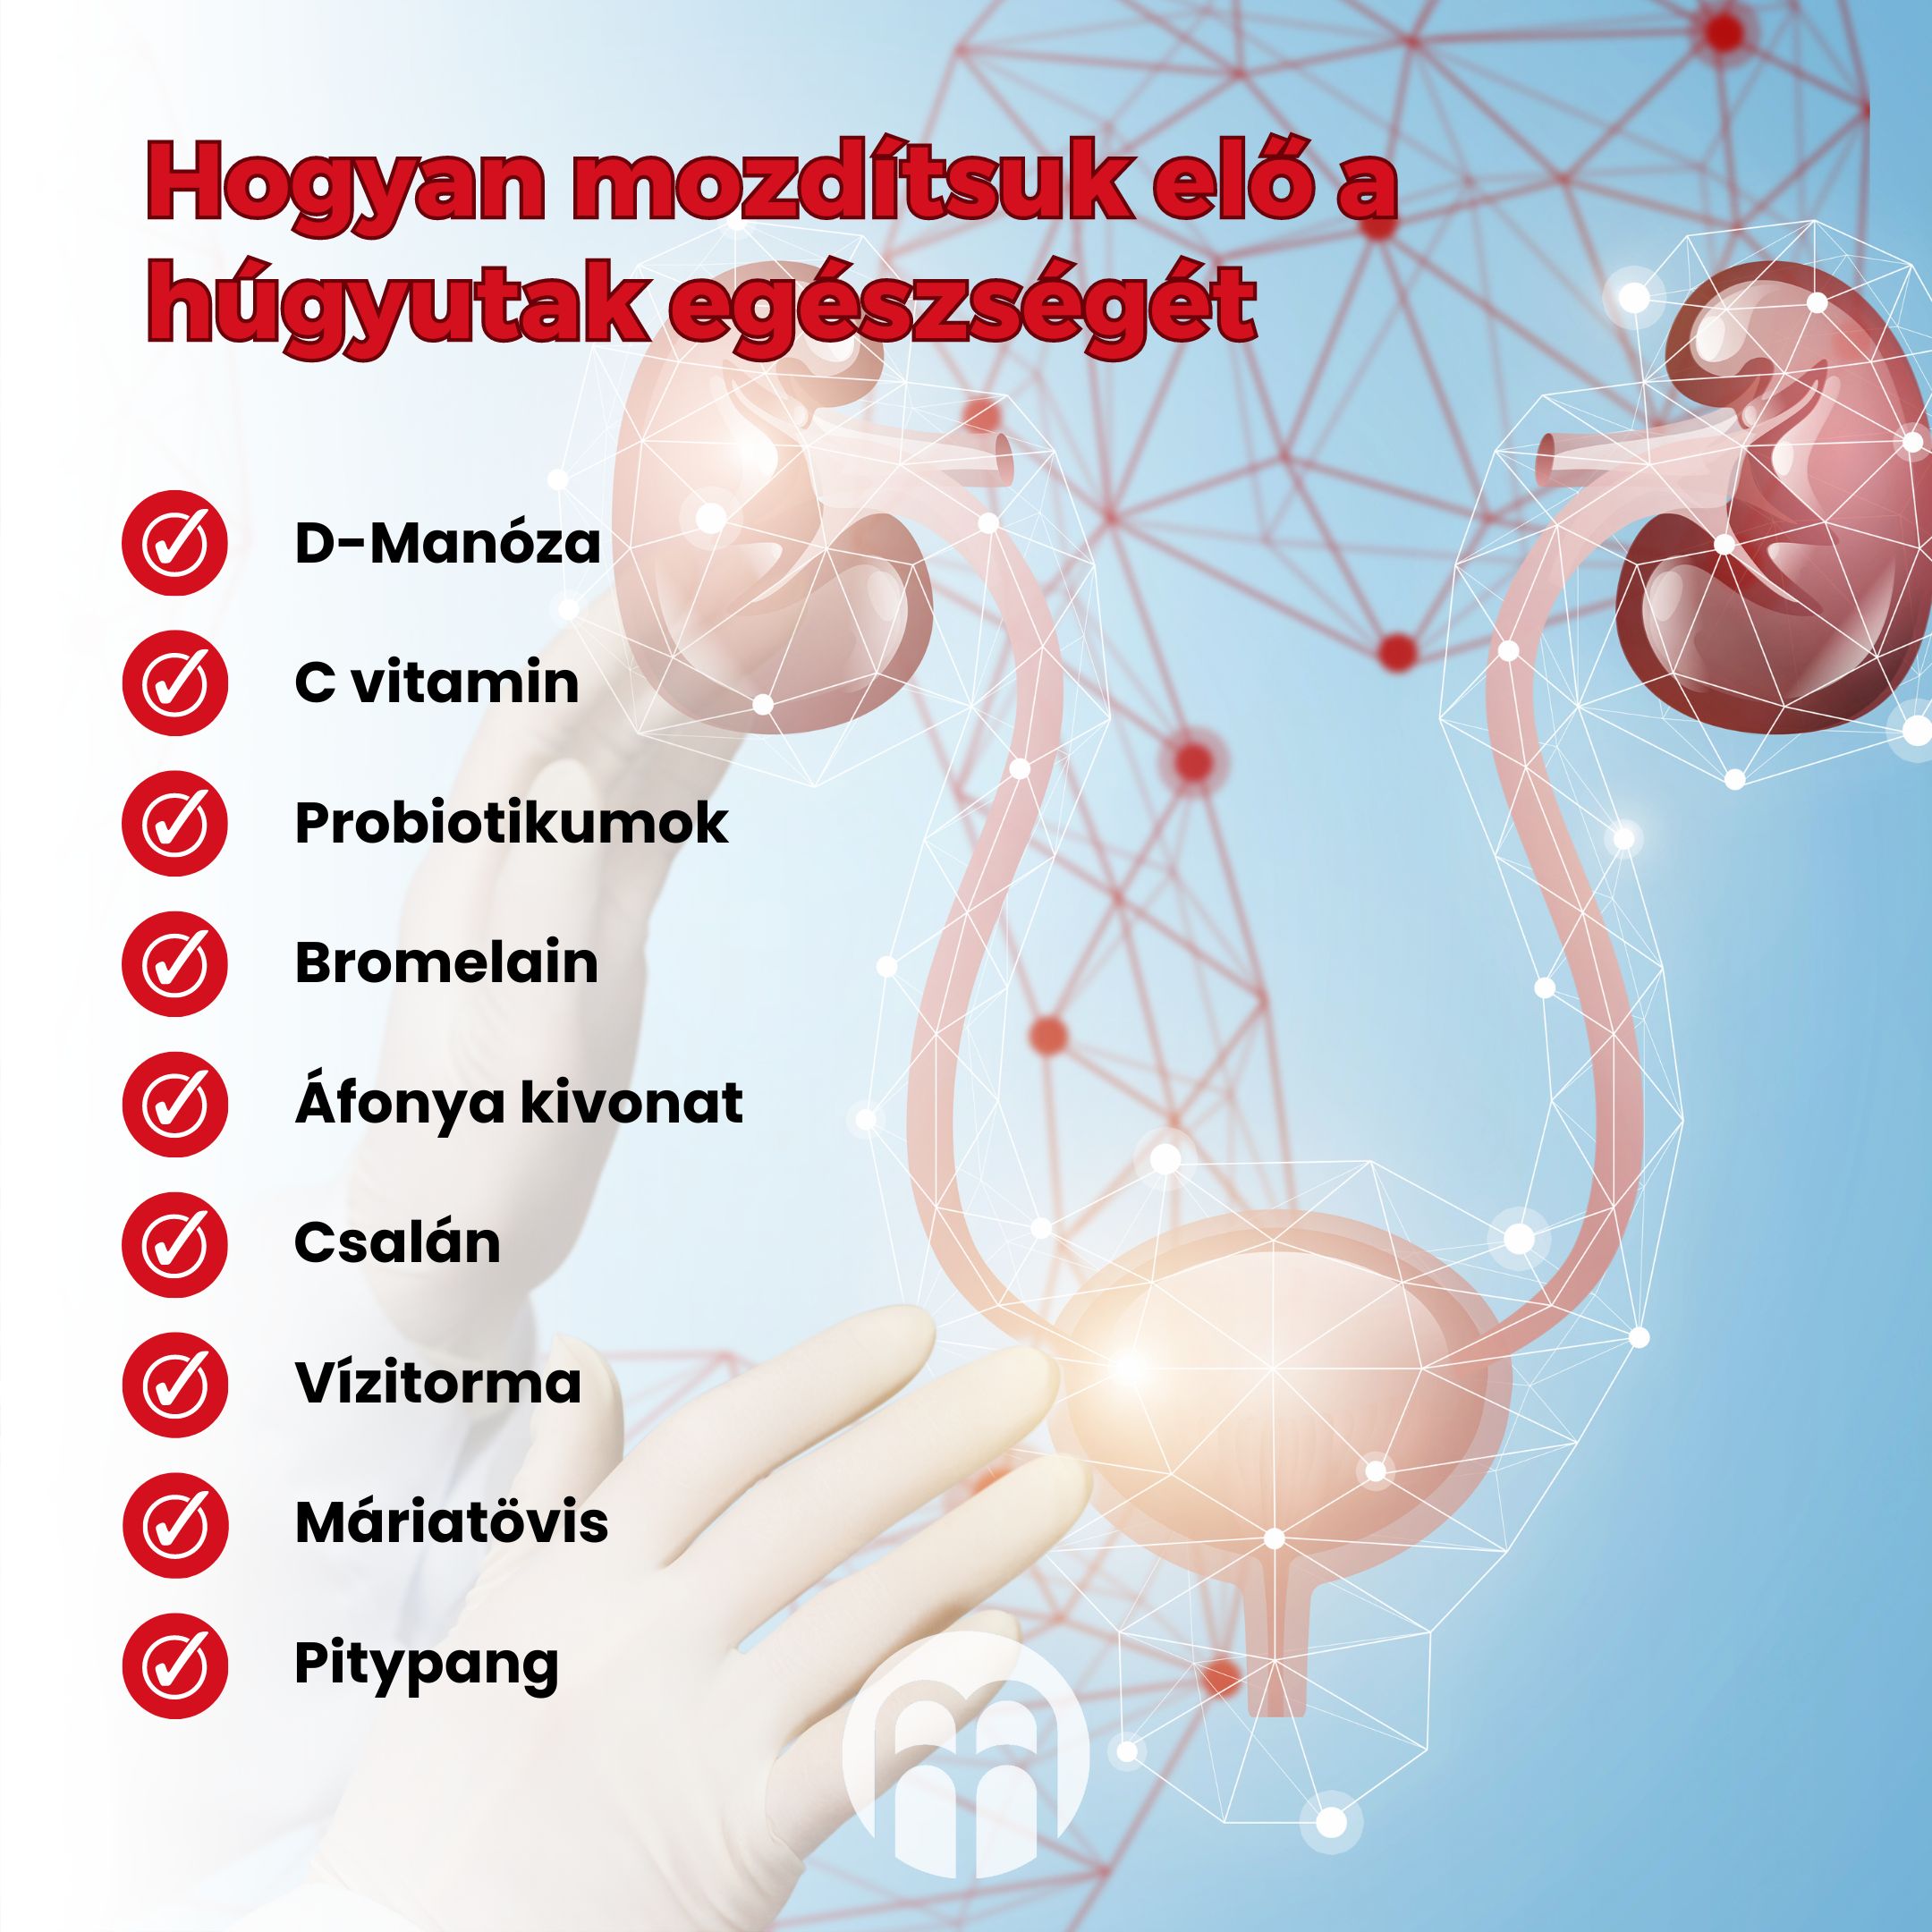 (Maďarština) Jak podpořit zdraví  močových cest